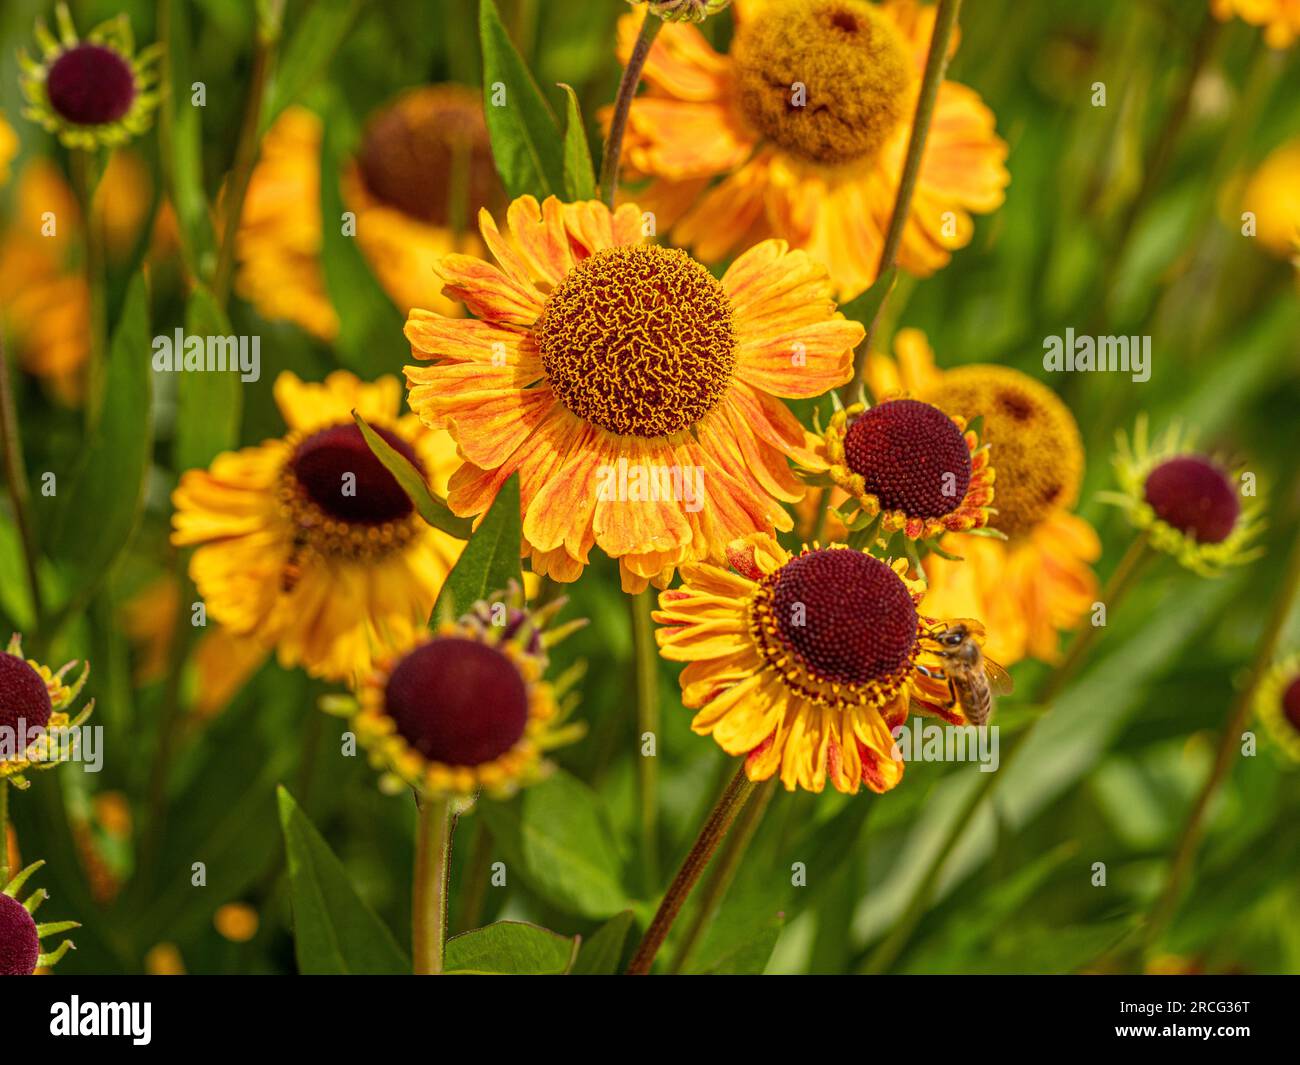 Helenium 'Wyndley' con i suoi ricchi petali gialli strizzati di arancio che cresce in abbondanza in un giardino. Foto Stock